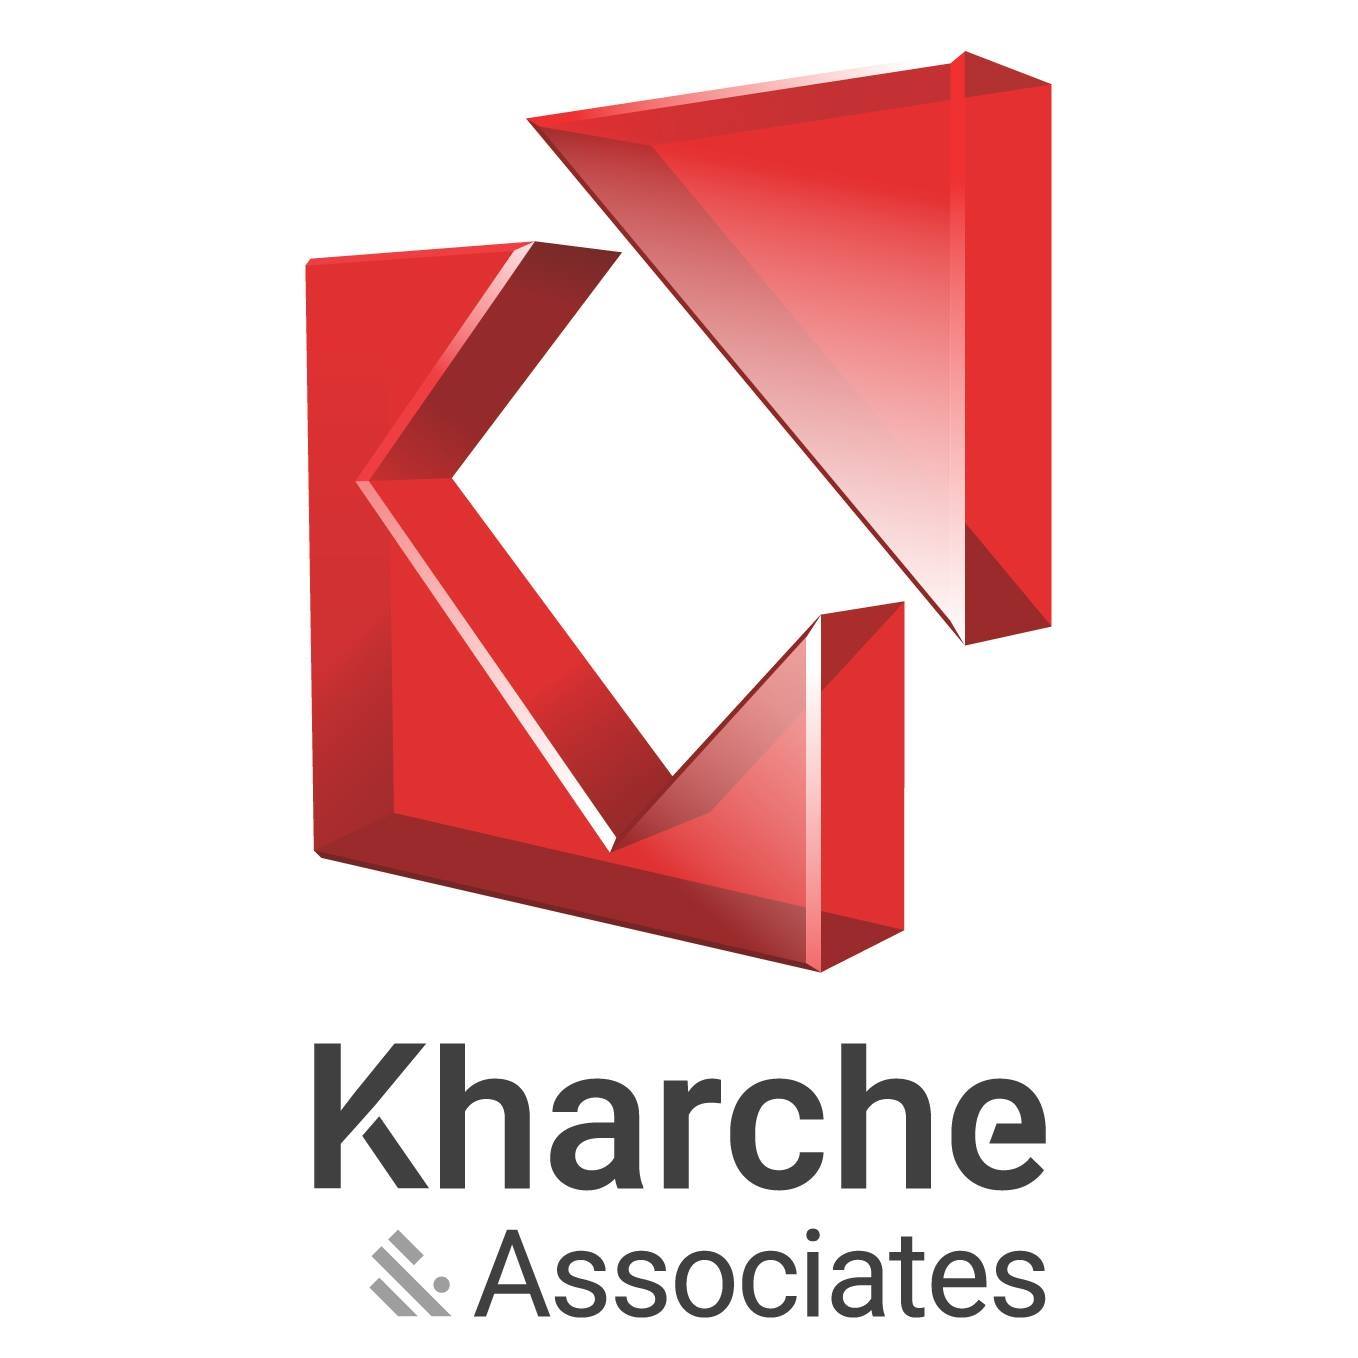 Kharche & Associates|IT Services|Professional Services